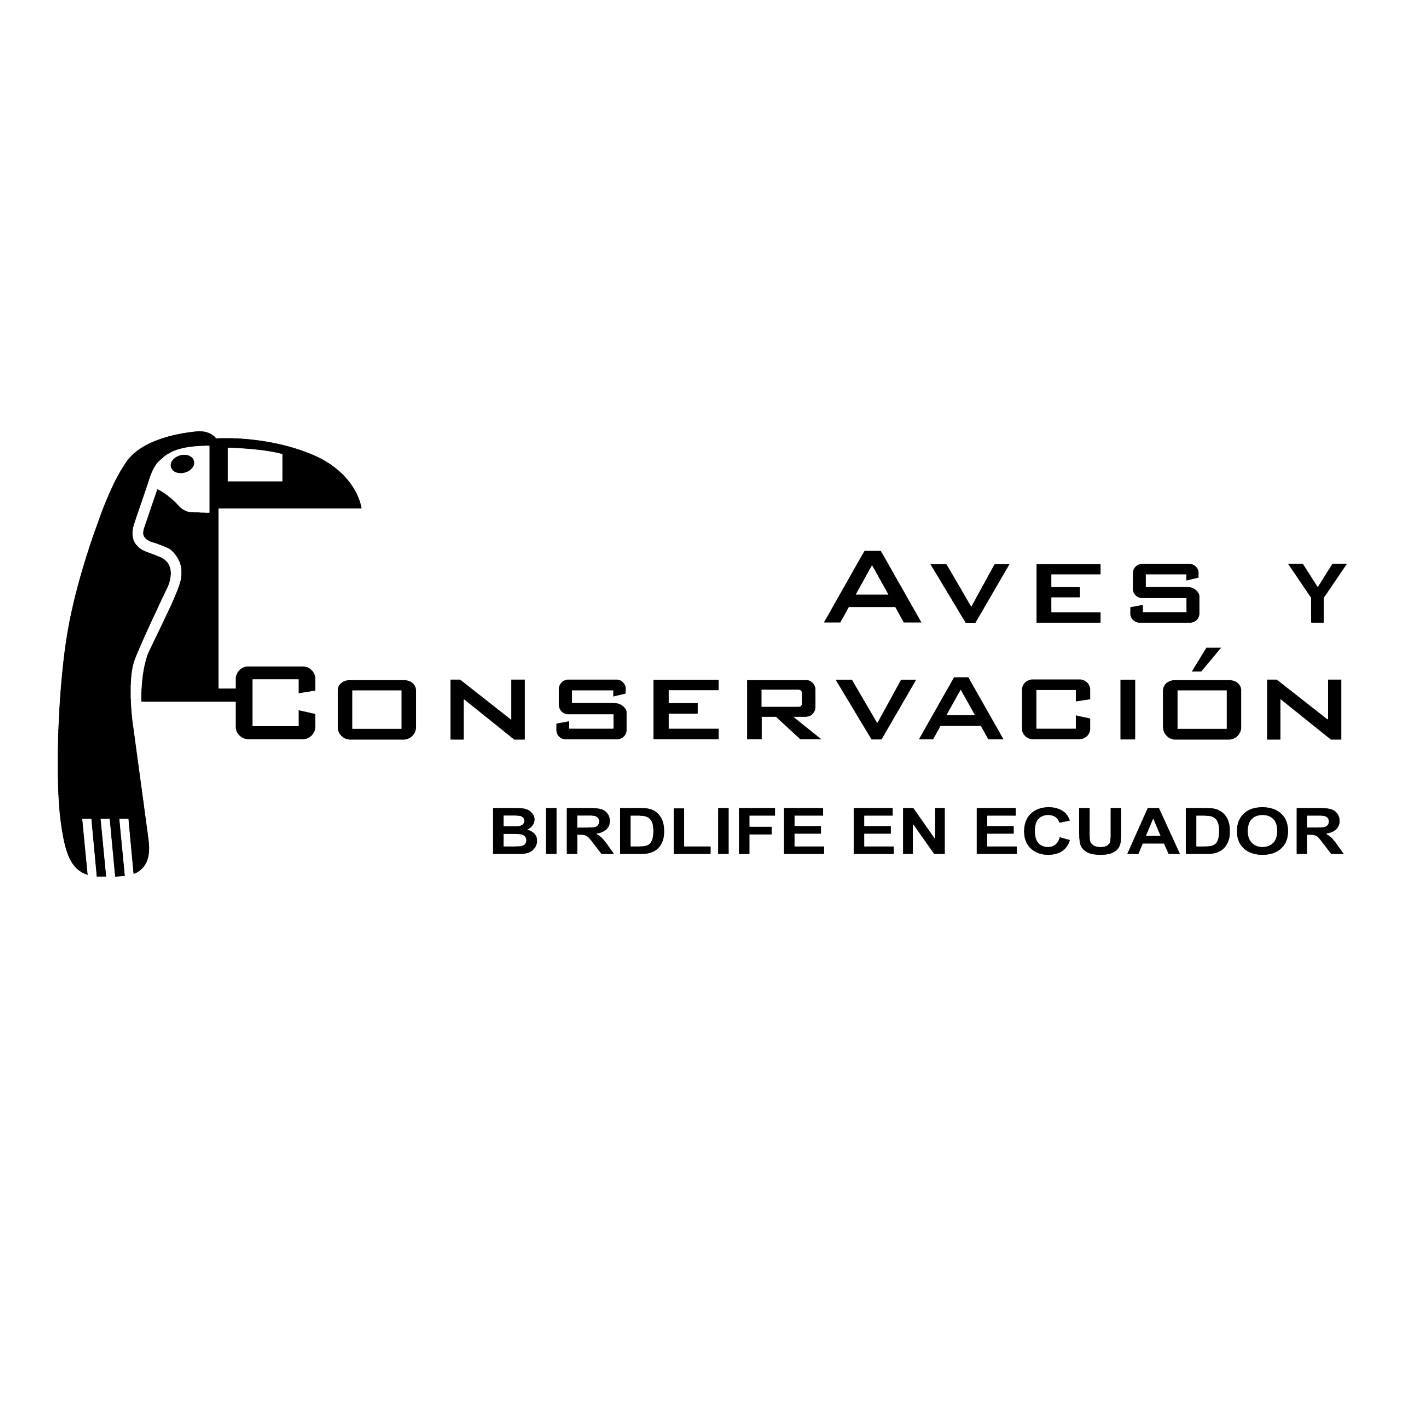 Aves y Conservacion